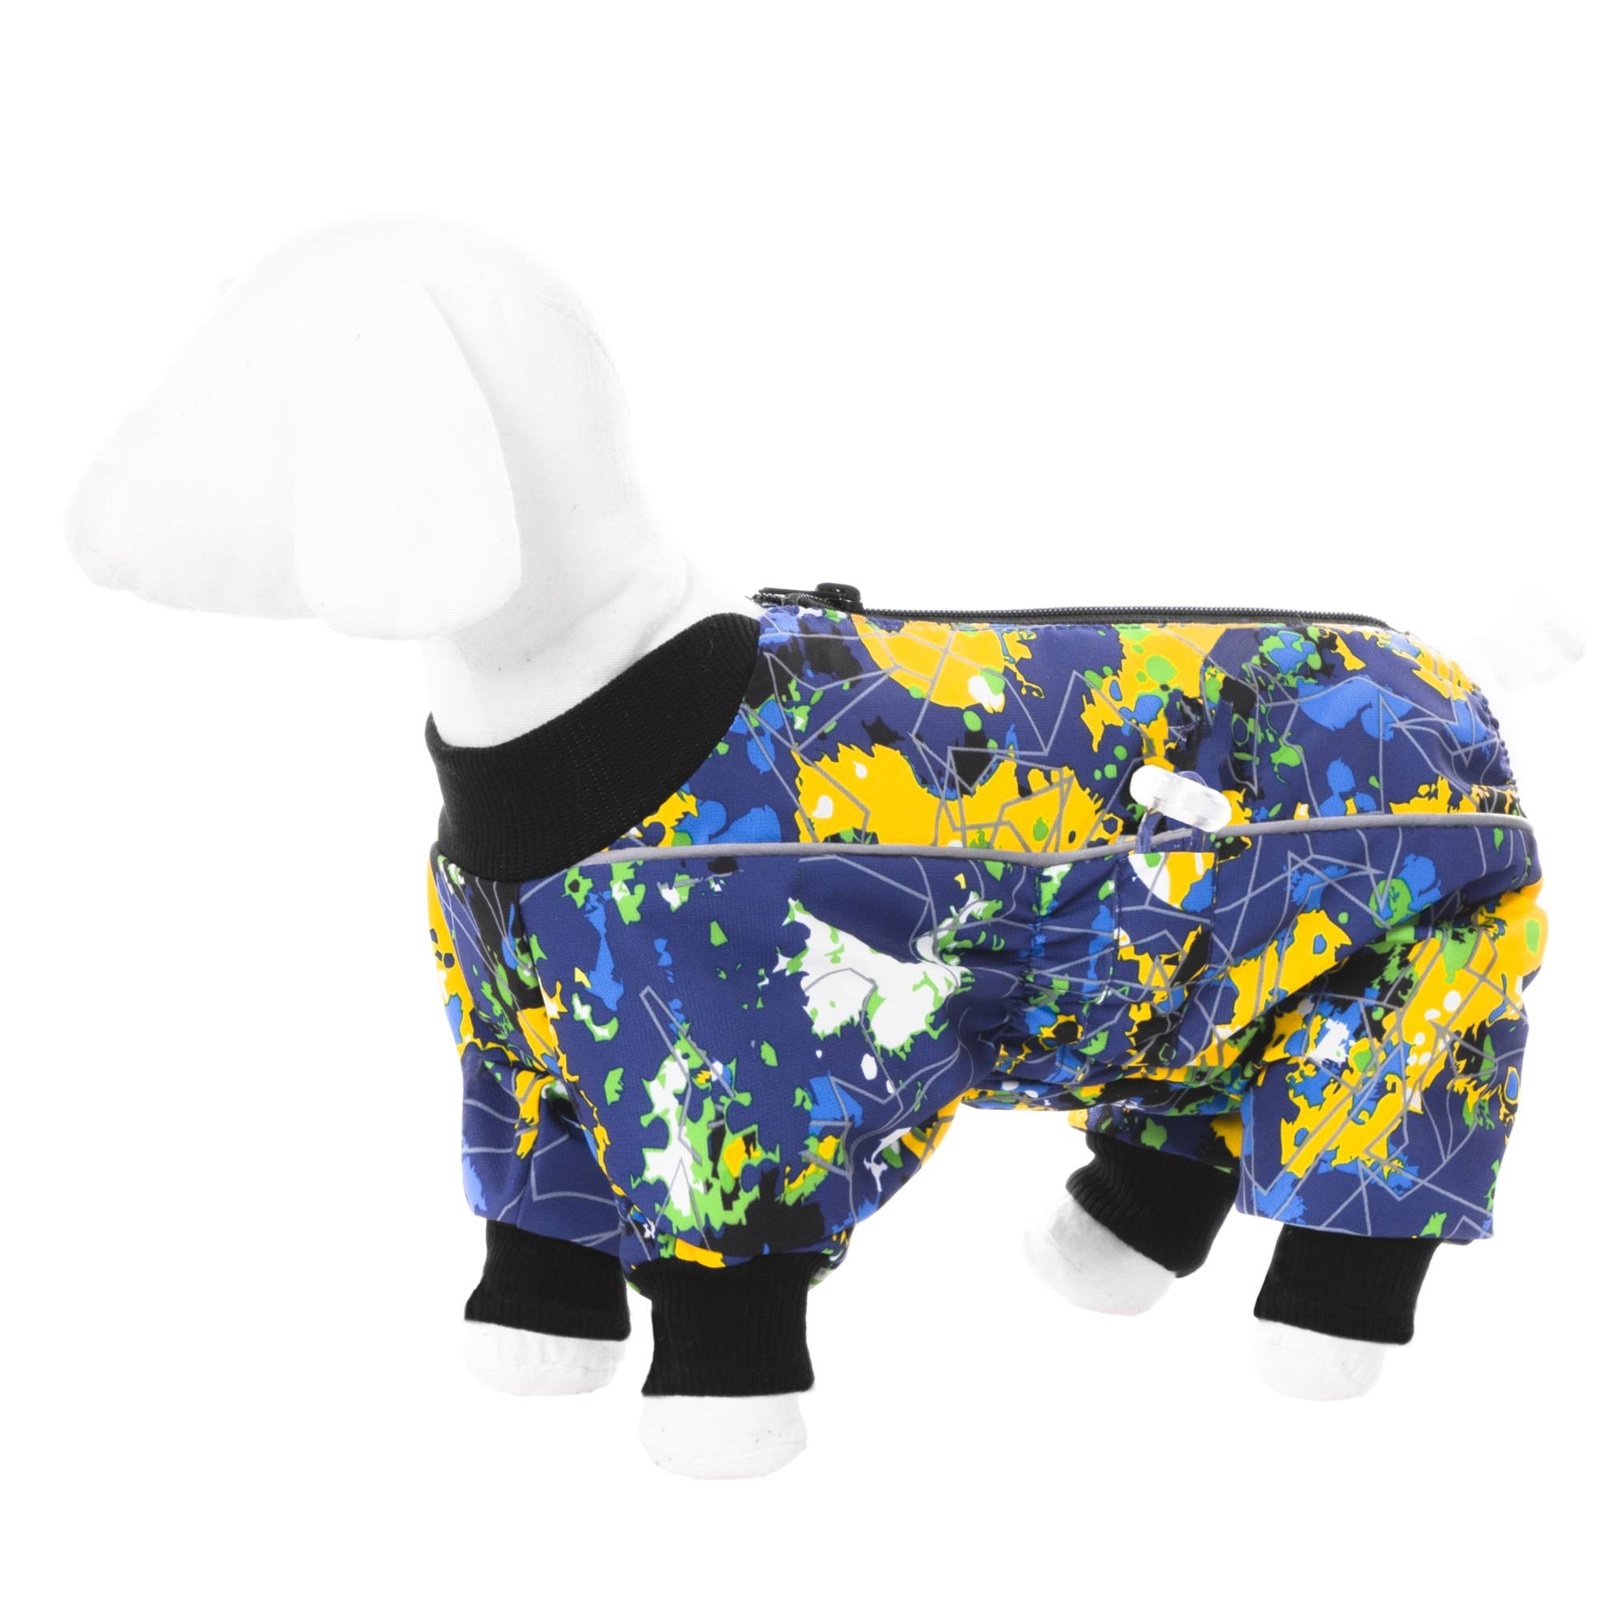 Yami-Yami одежда Yami-Yami одежда комбинезон для собак малых пород, на флисе с рисунком краски (M)